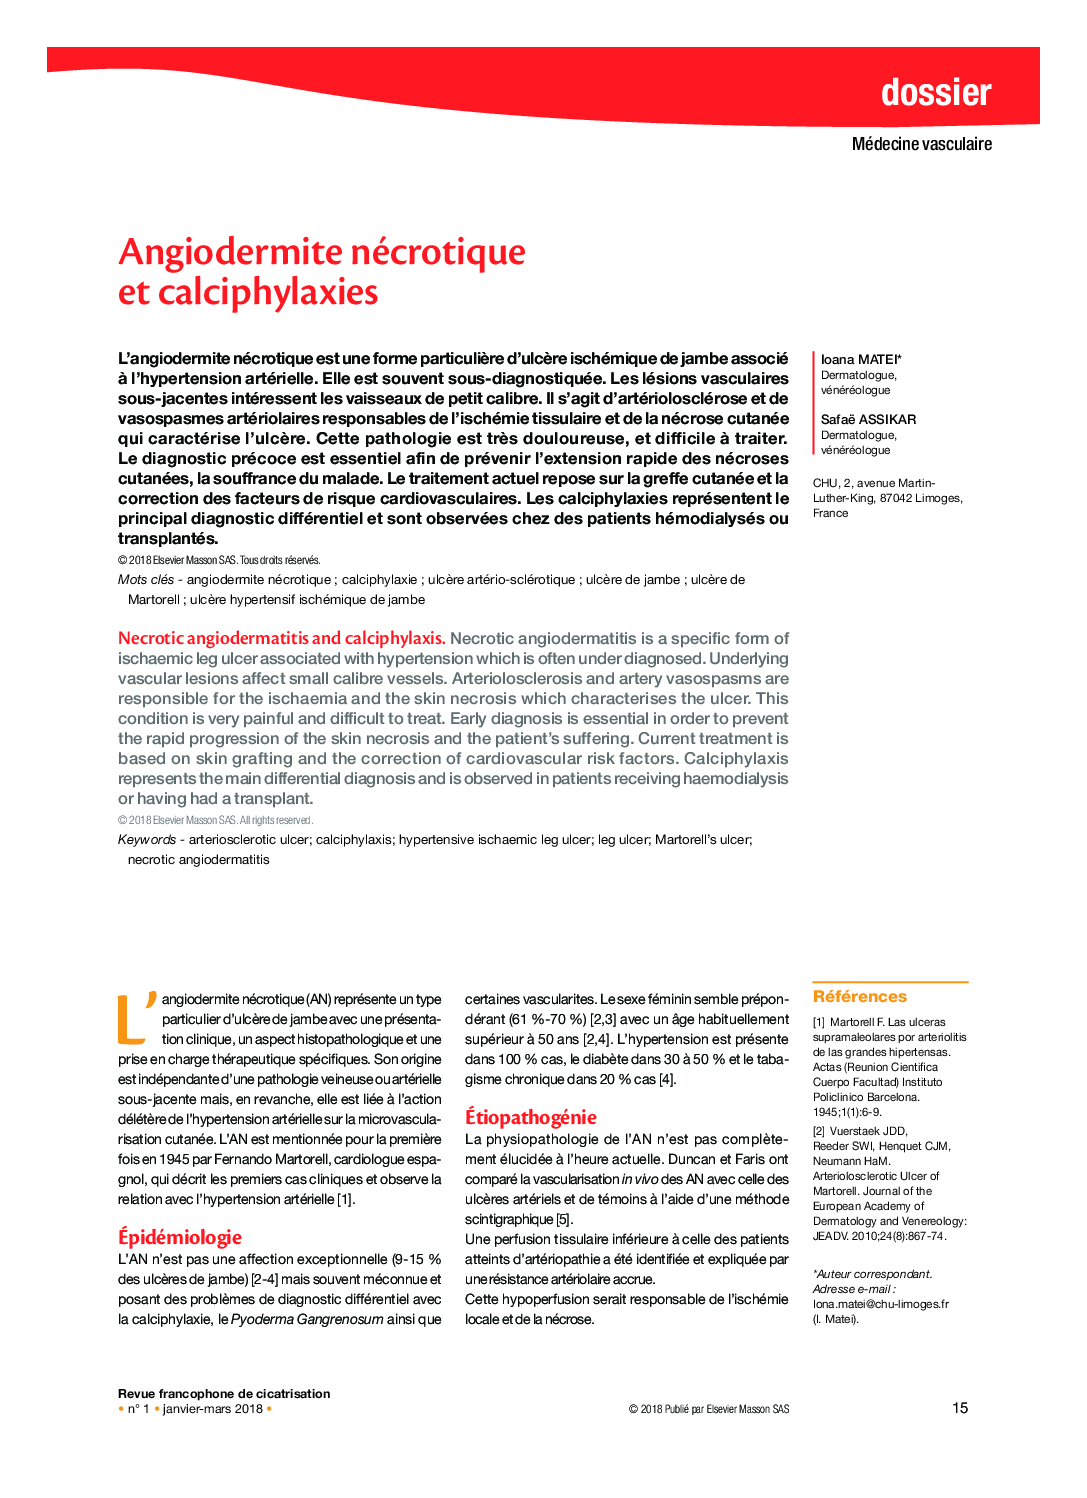 Angiodermite nécrotique et calciphylaxies